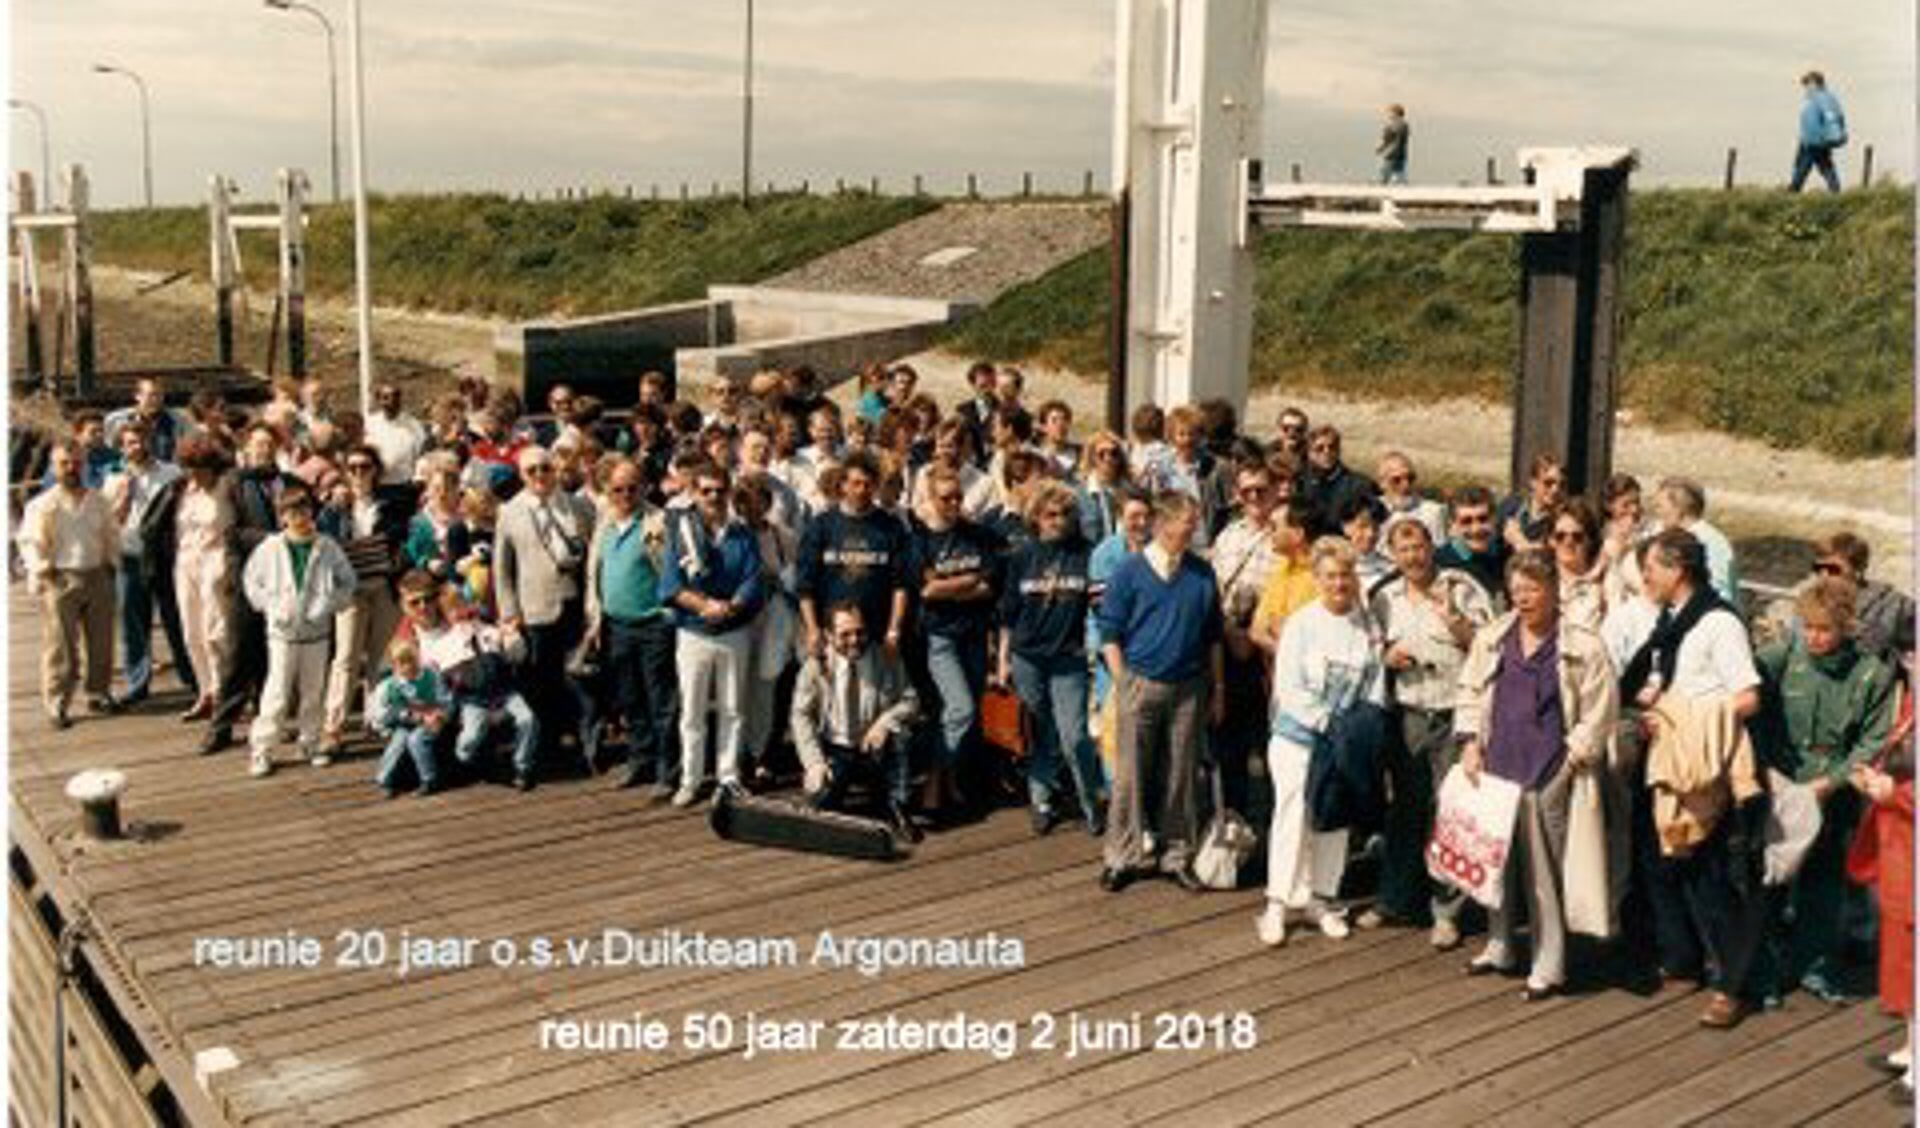 Duikteam Argonauta was de eerste sportduikvereniging in West-Brabant en Zeeland.